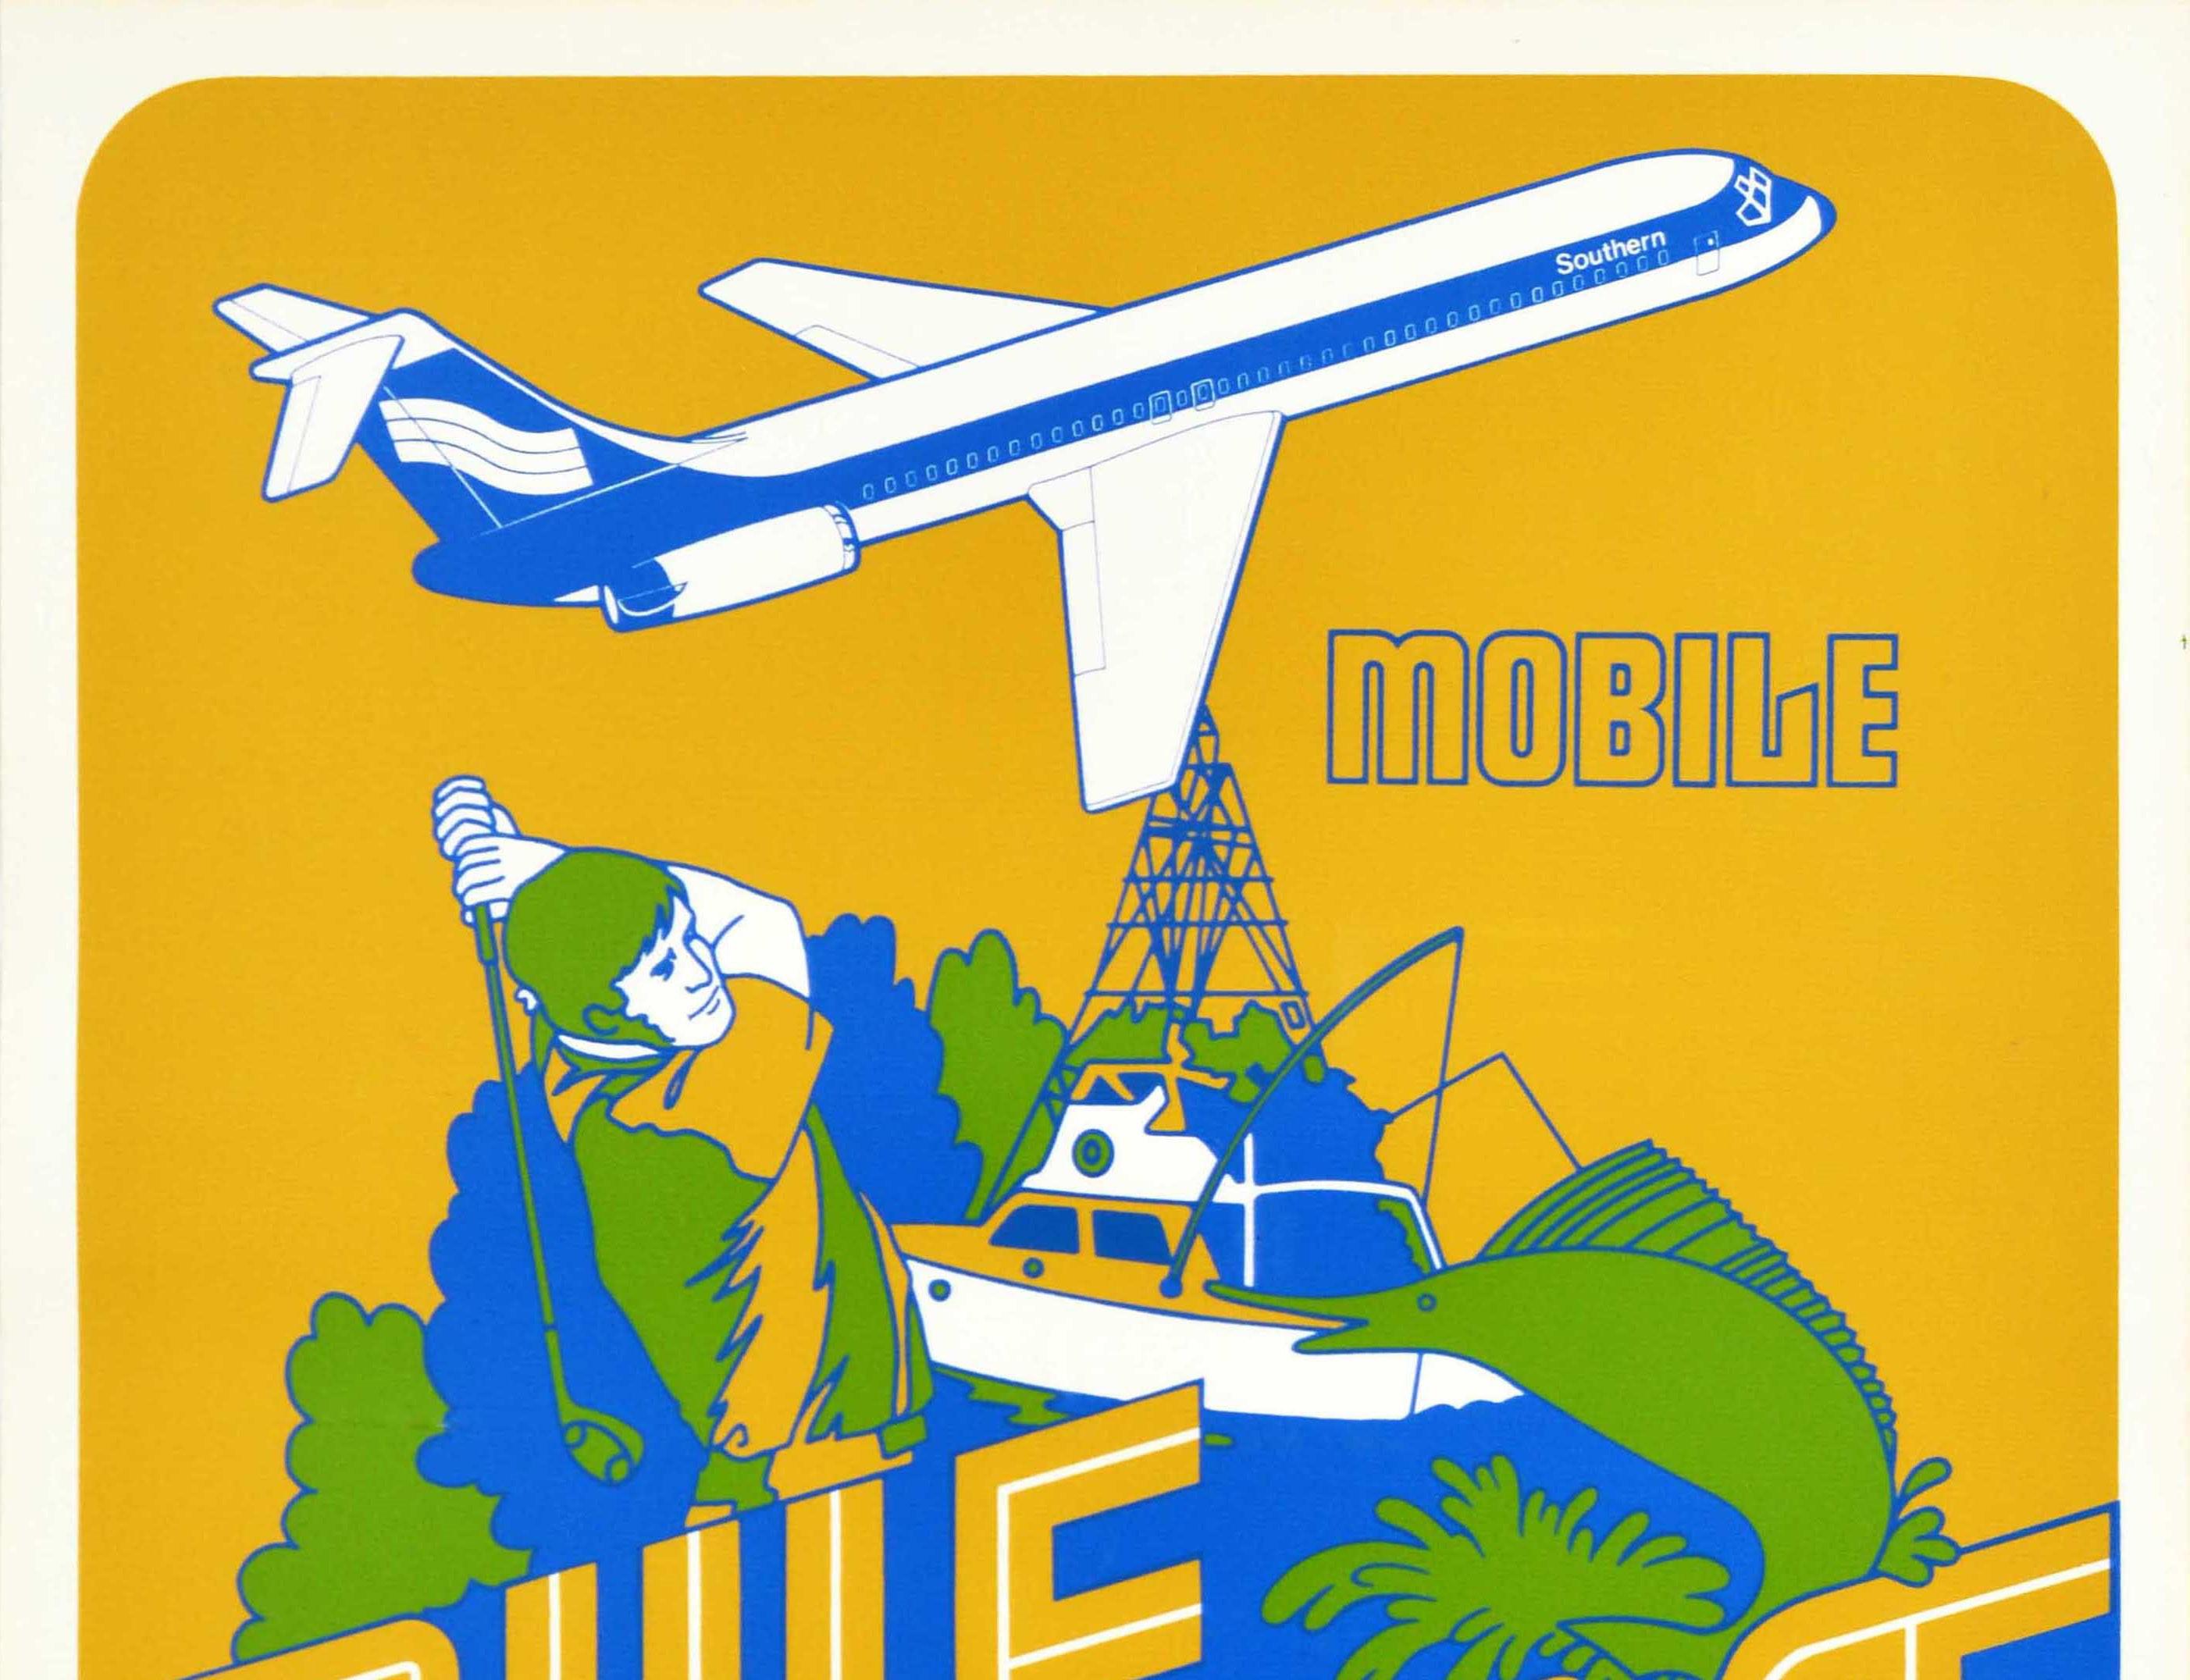 Affiche de voyage originale pour Mobile Gulf Coast Southern Airways (1944-1979) présentant un dessin diagonal coloré représentant un homme jouant au golf devant des arbres avec un poisson et un bateau sur le côté, un avion de Southern volant dans le